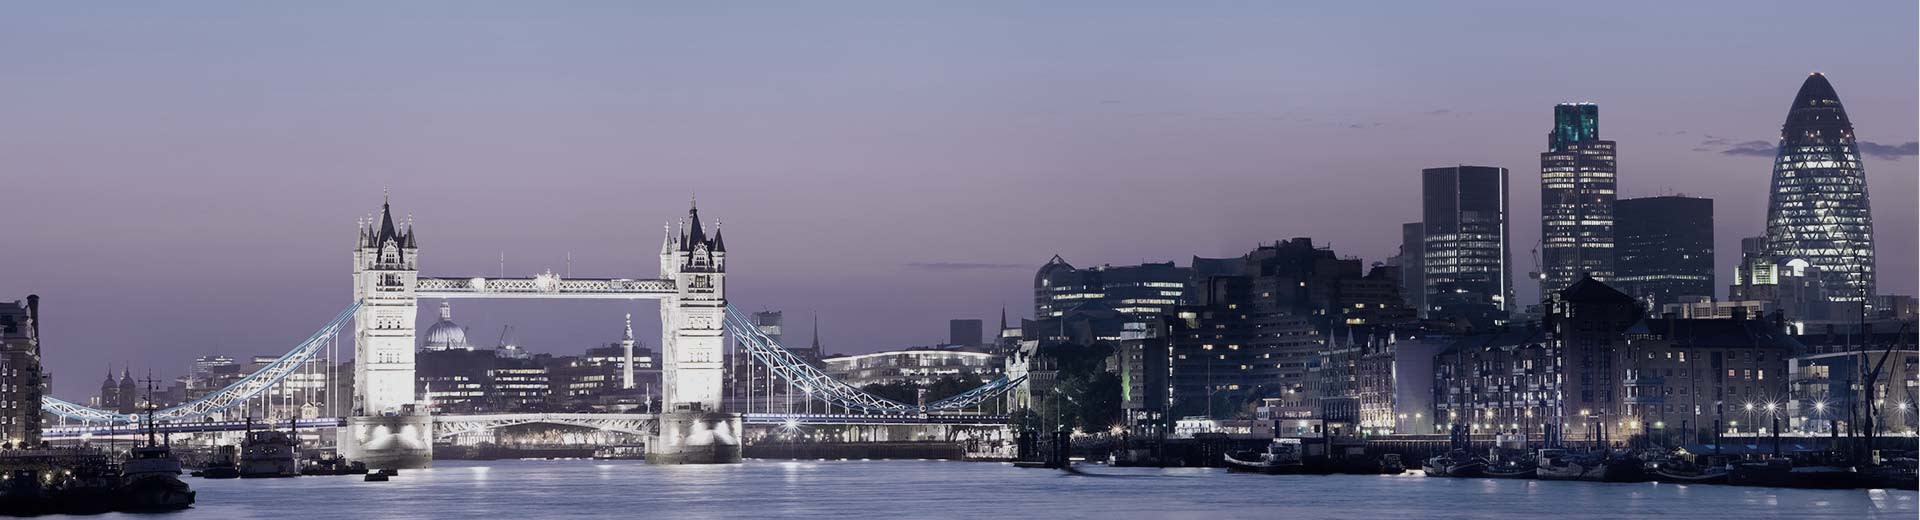 Die London Bridge erstreckt sich nachts über die Themse und beleuchtet den Himmel.